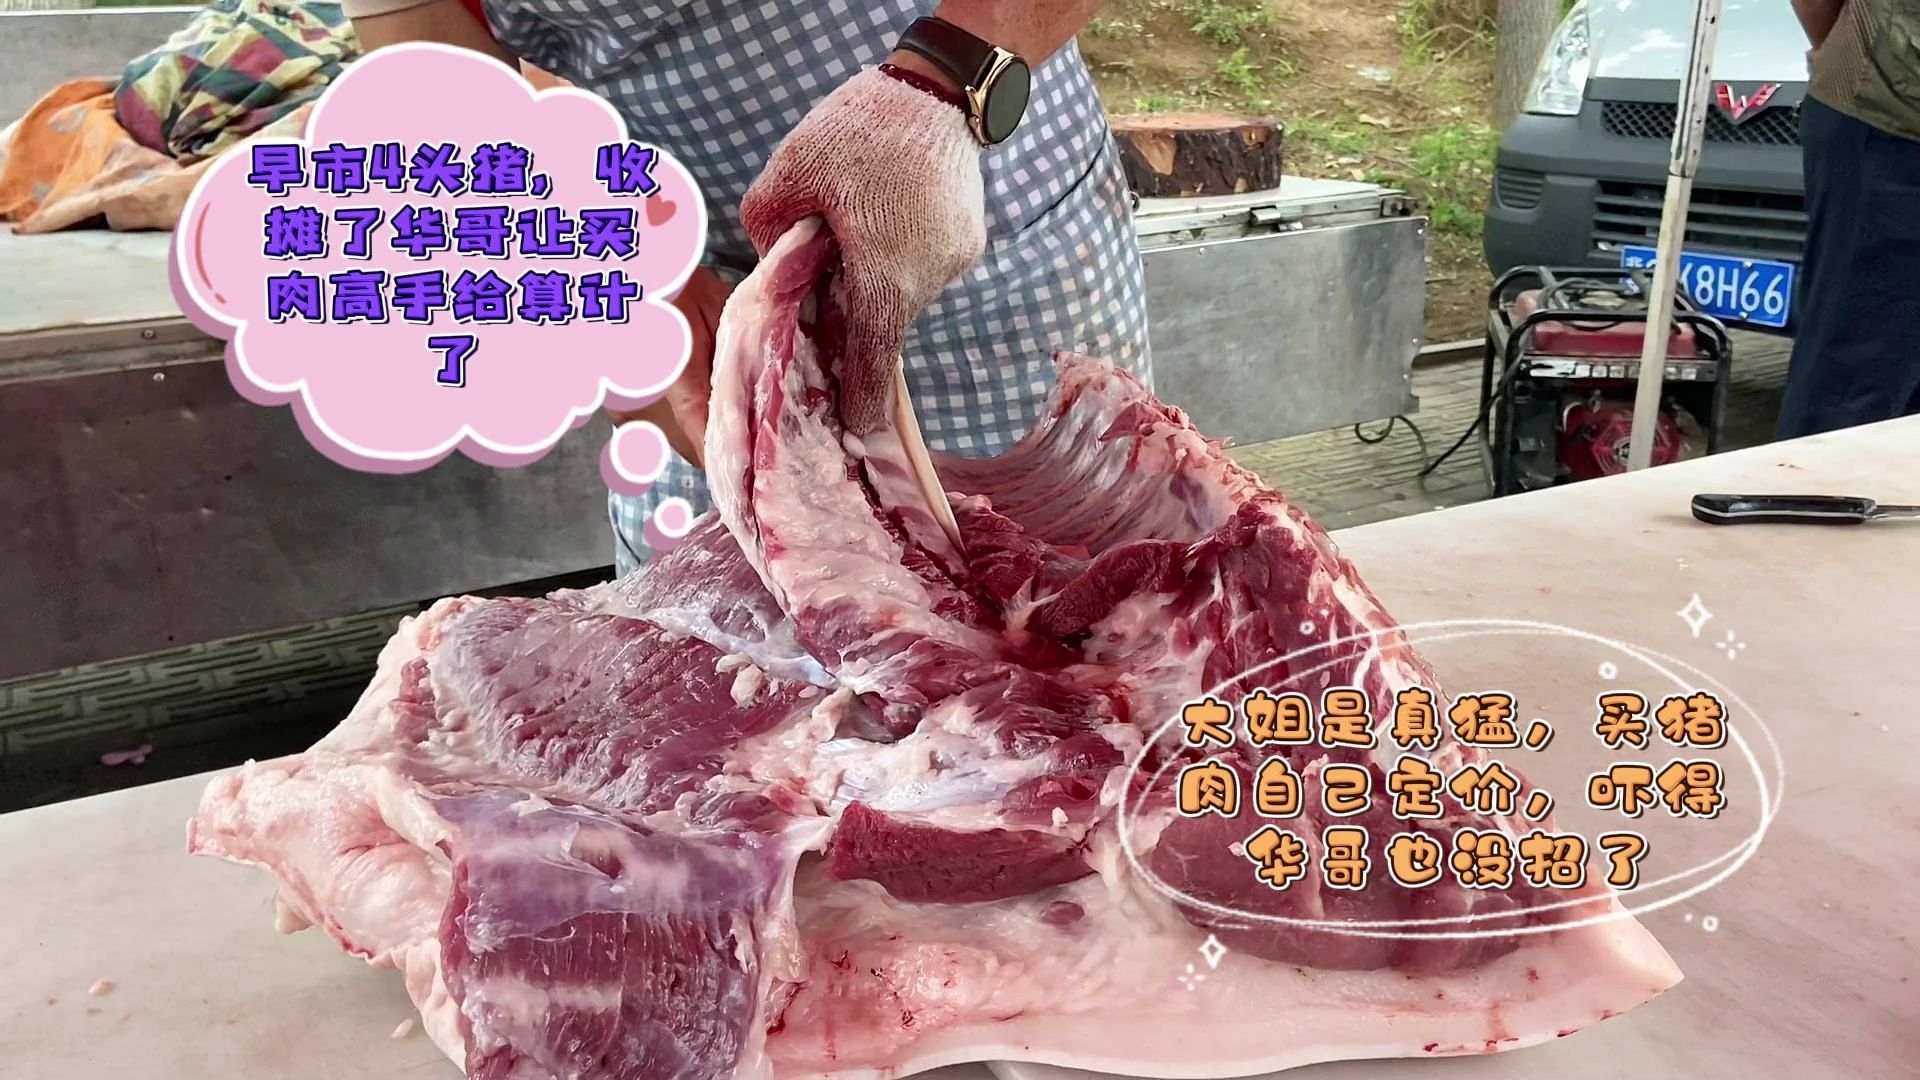 今天华哥卖猪肉遇到罕见对手让人算计了,吓得赶紧收摊回家不干了